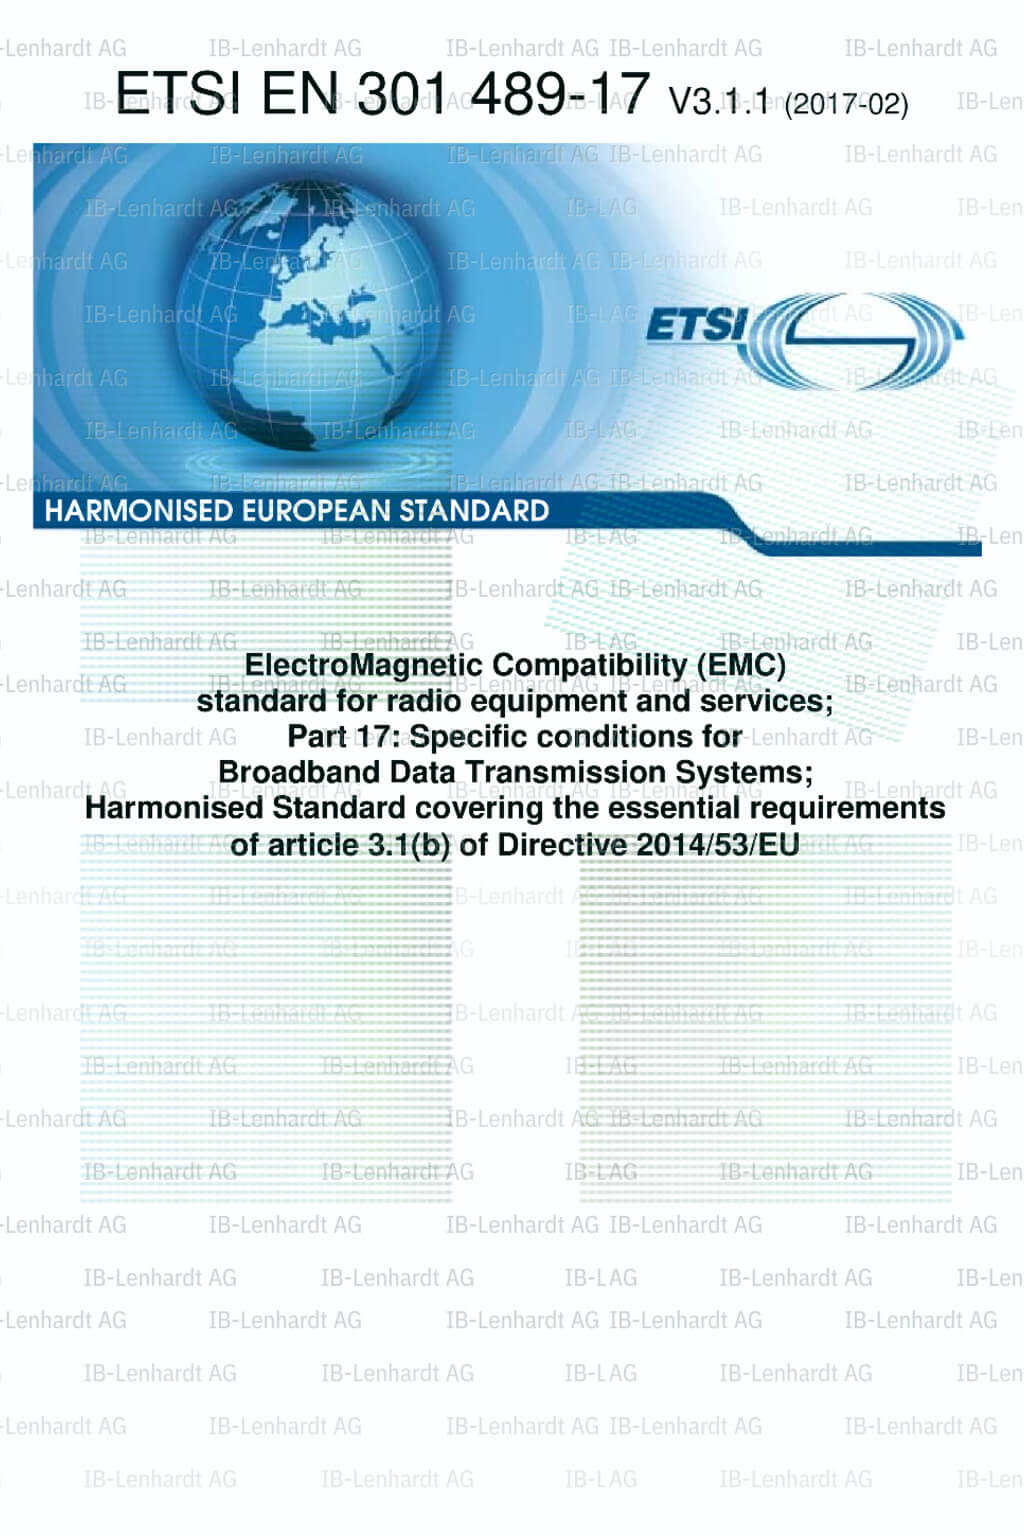 ETSI EN 301 489-17 V3.1.1